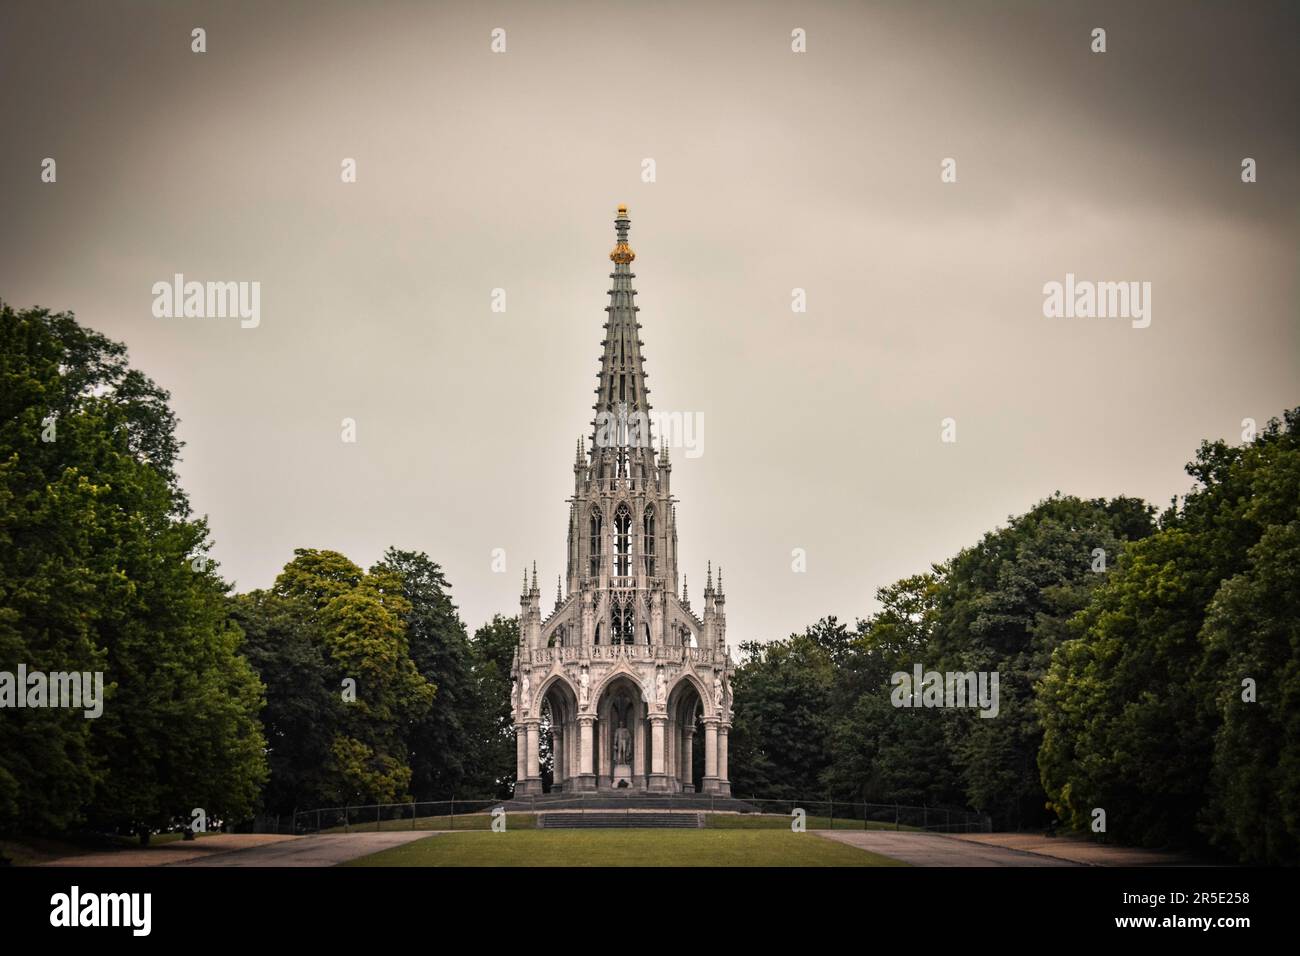 Il monumento neogotico al re Leopoldo nel Parco Laeken - Bruxelles, Belgio Foto Stock